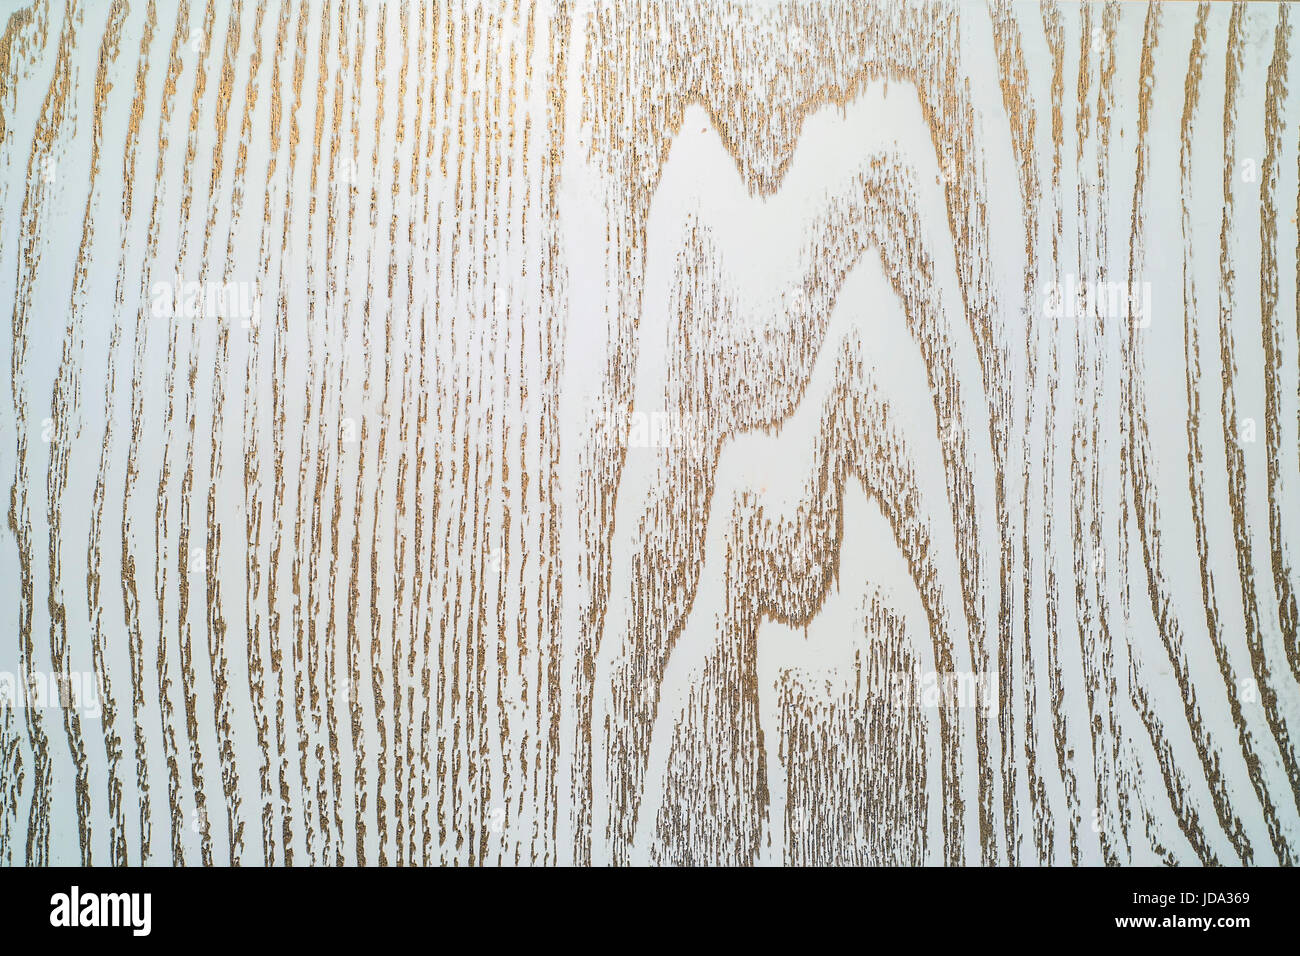 La texture de vieille planche peinte avec de la peinture blanche ou crème et patine bronze ou d'or Banque D'Images